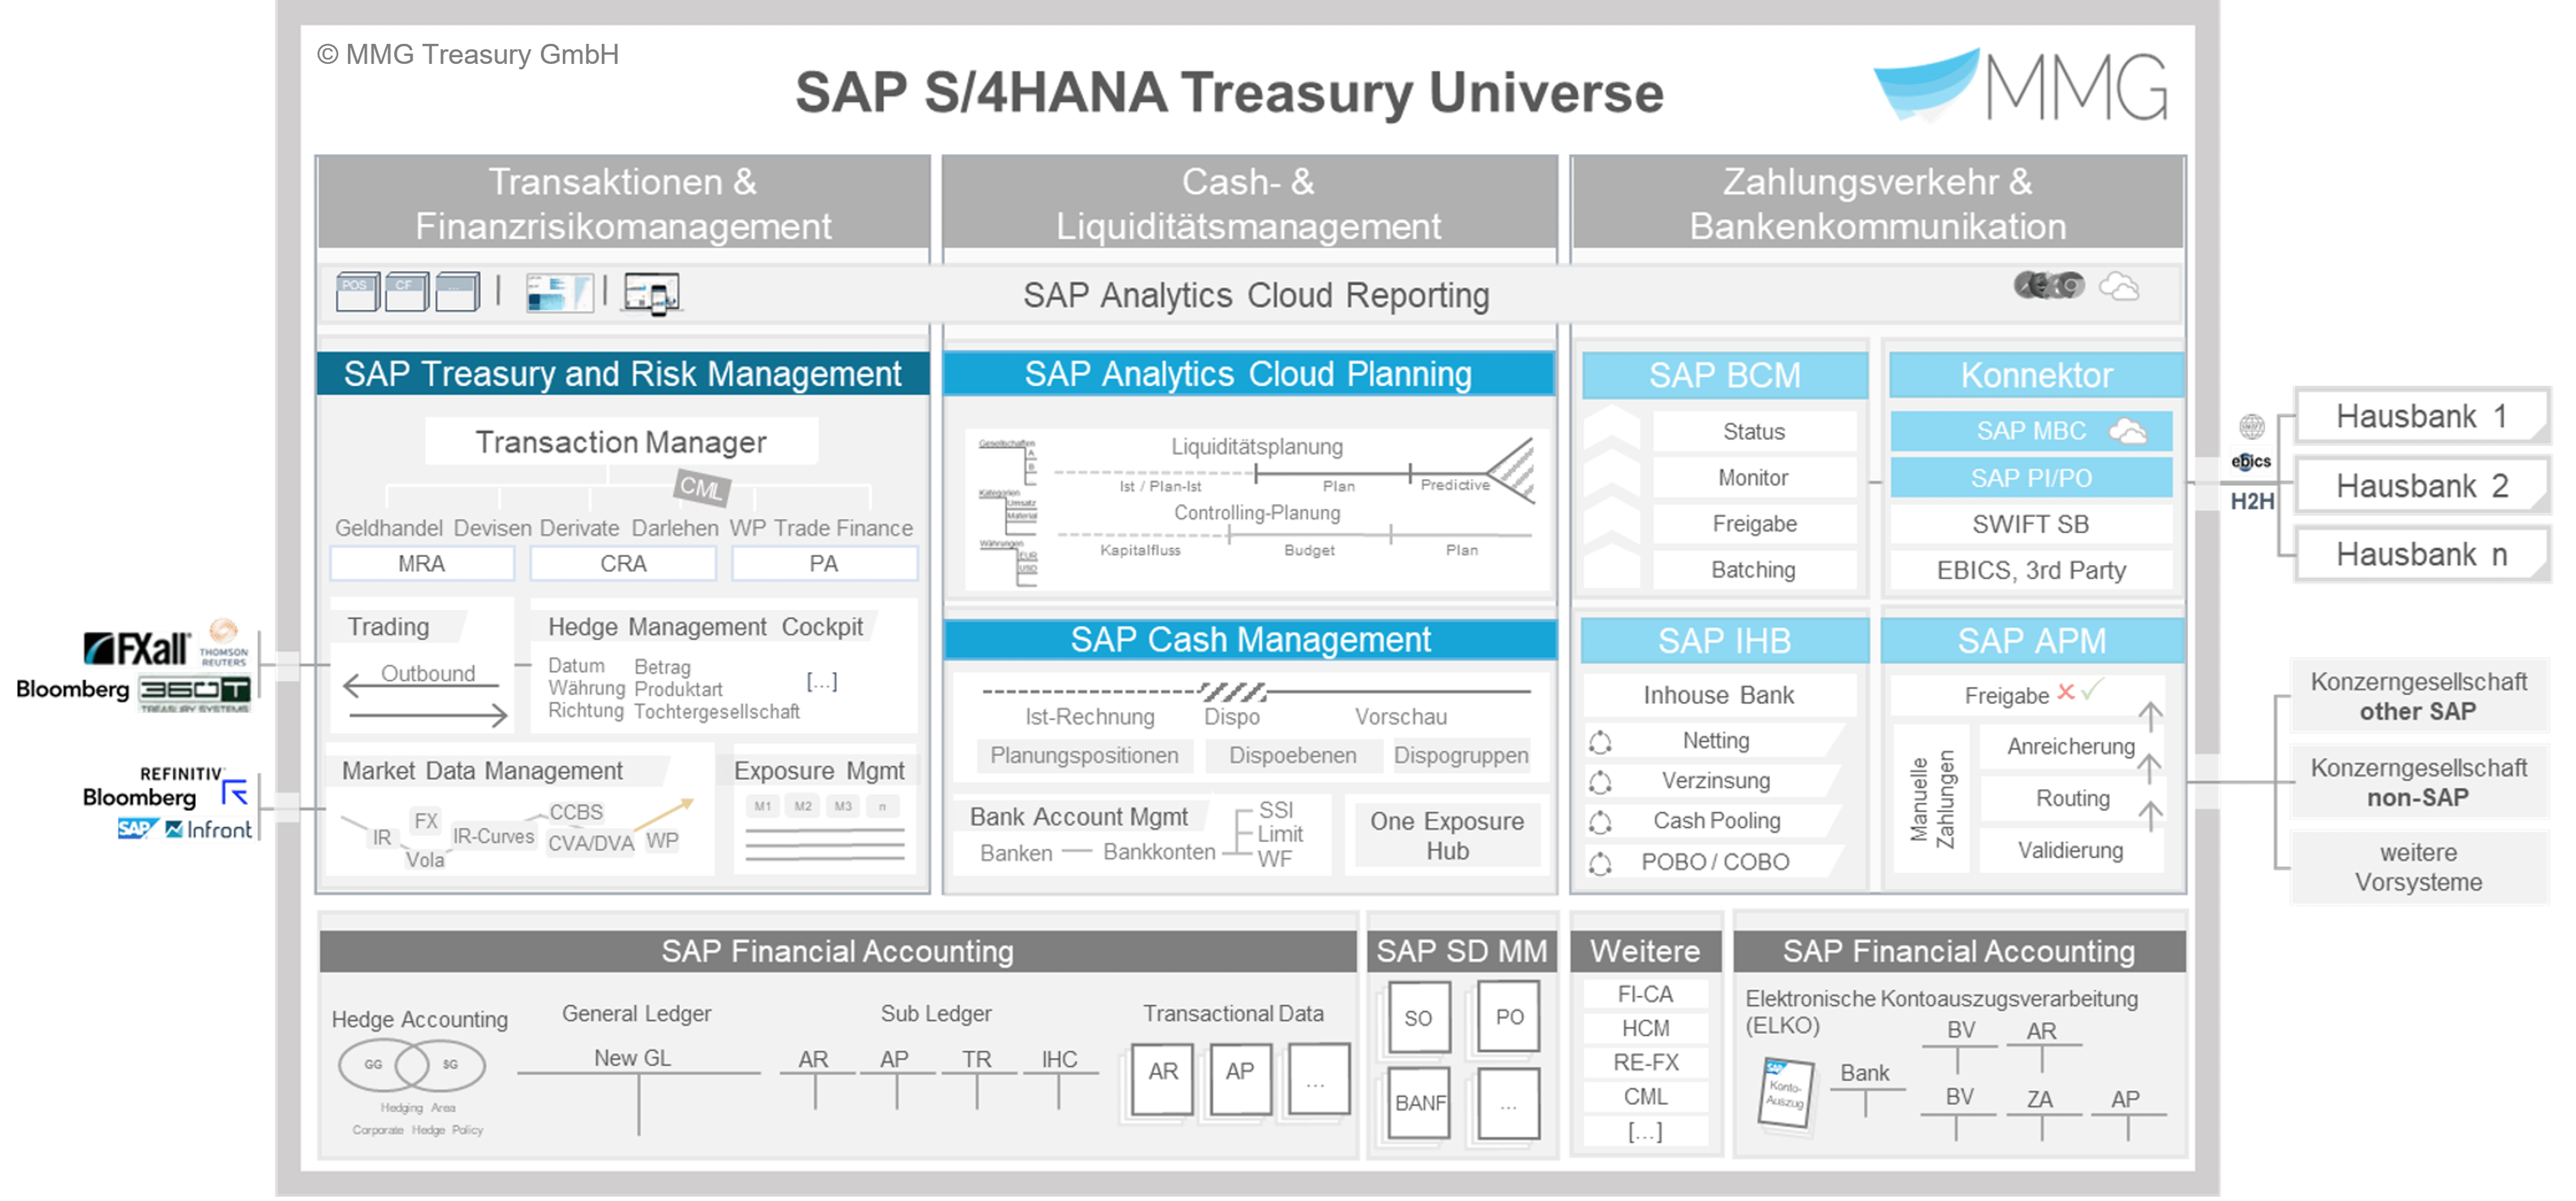 SAP Treasury Universe